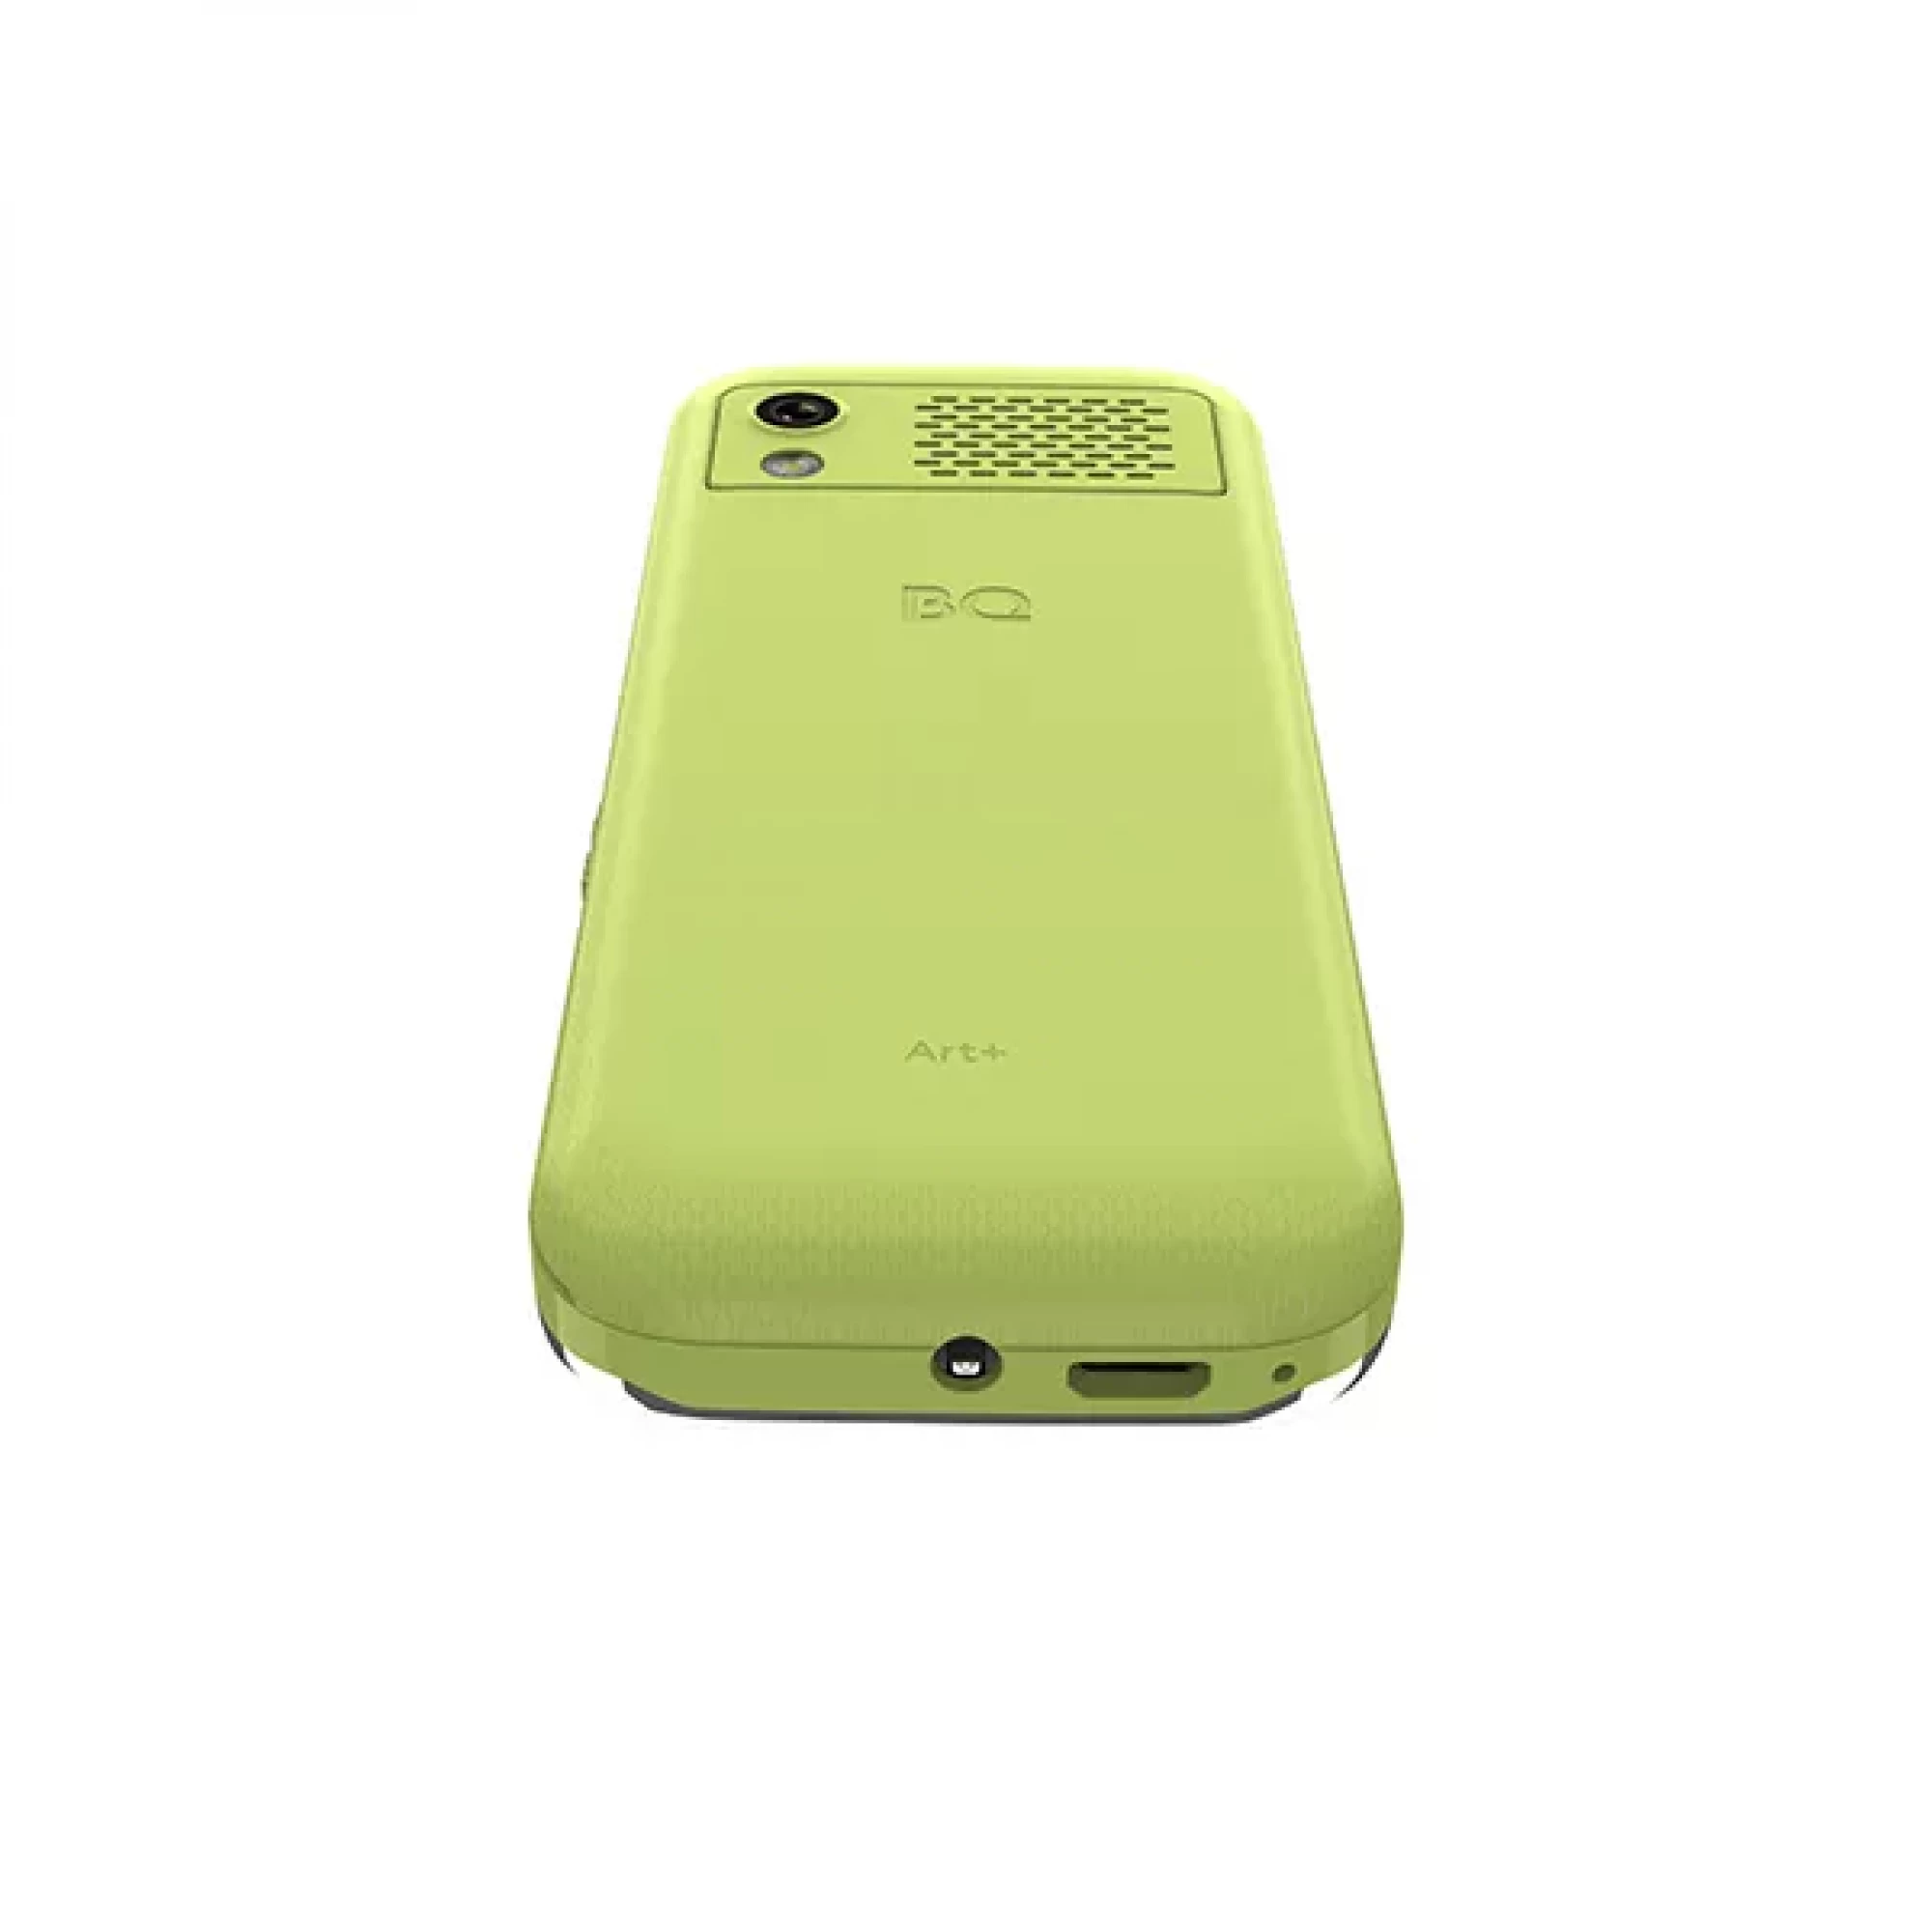 Мобильный телефон BQ BQ-1868 Art+ (зеленый)